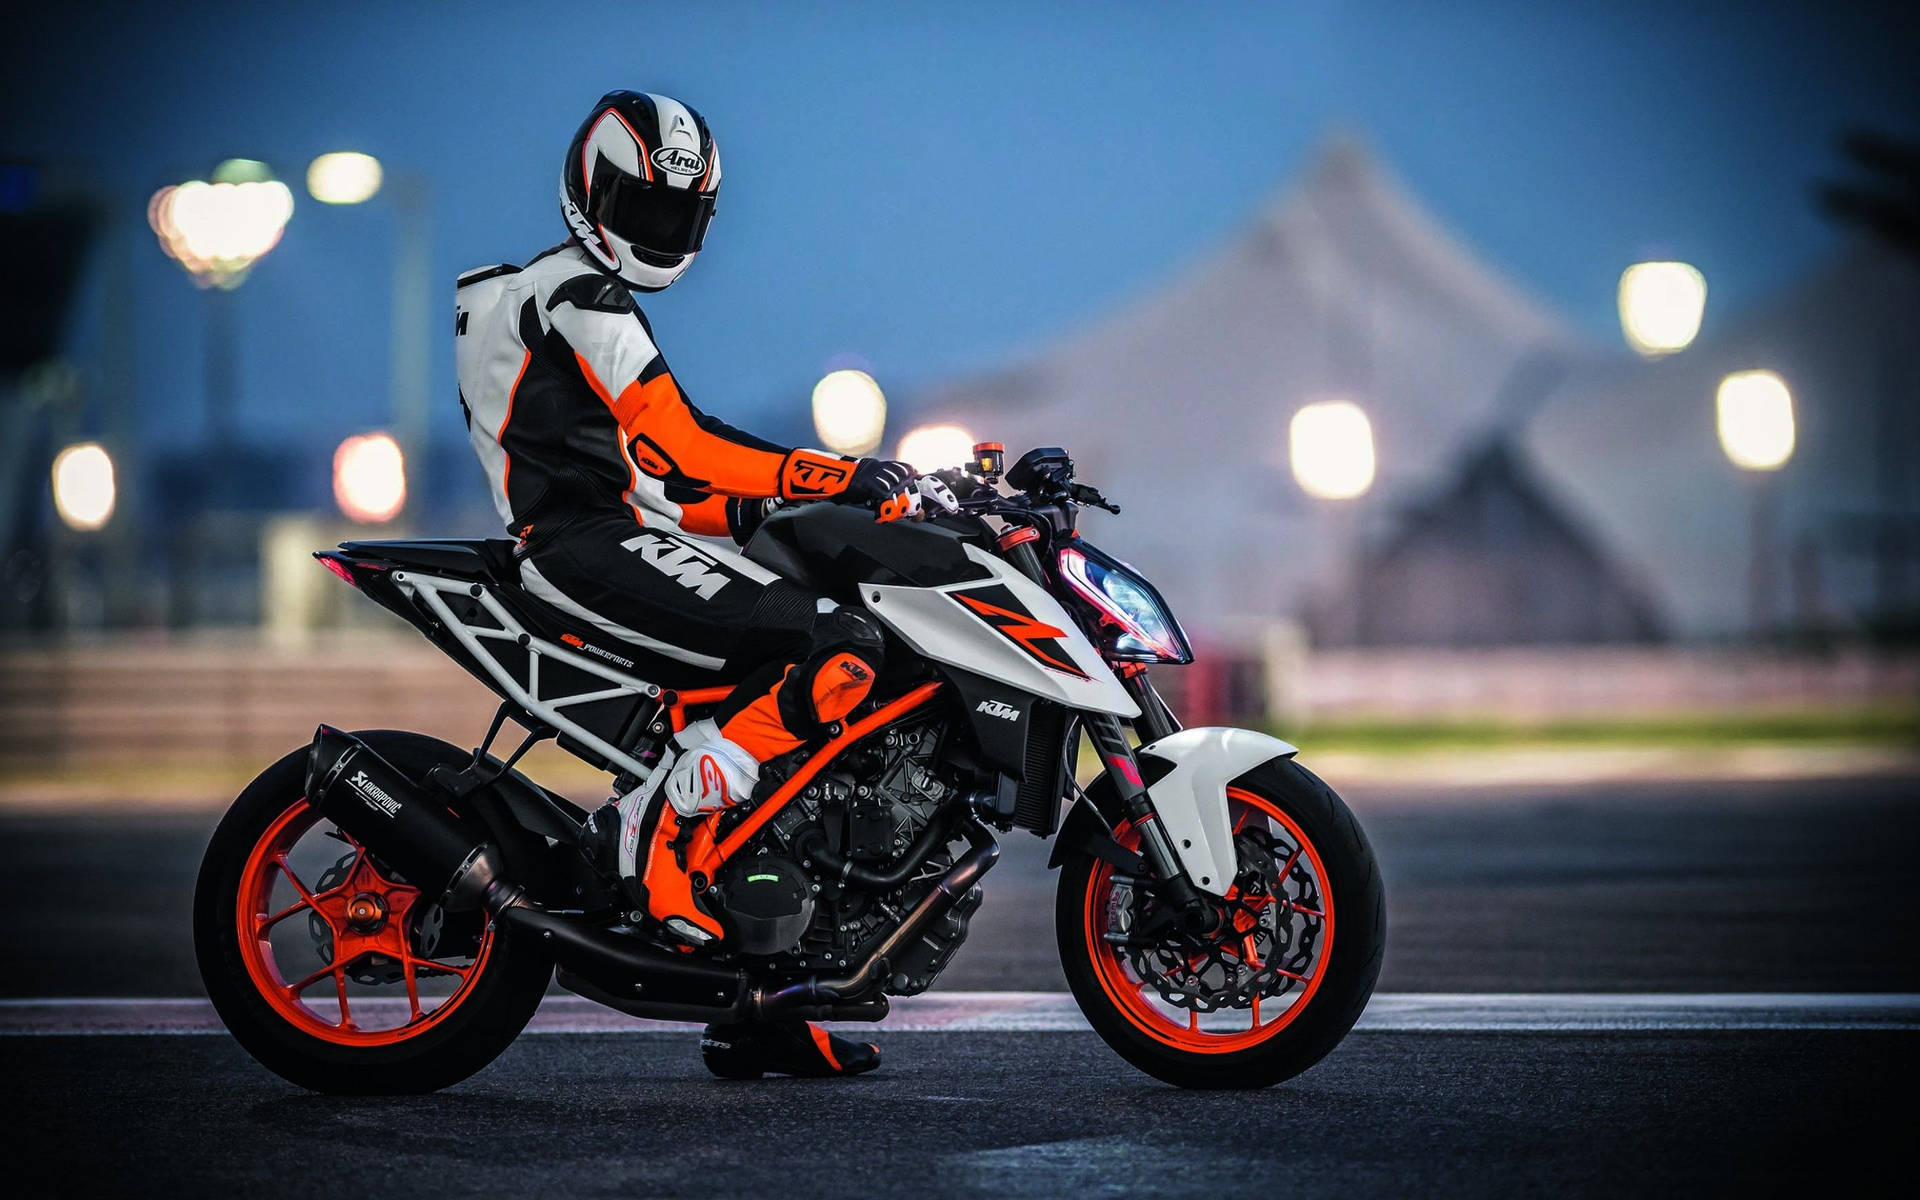 Ktm Duke 390 Rider In Full Gear Background